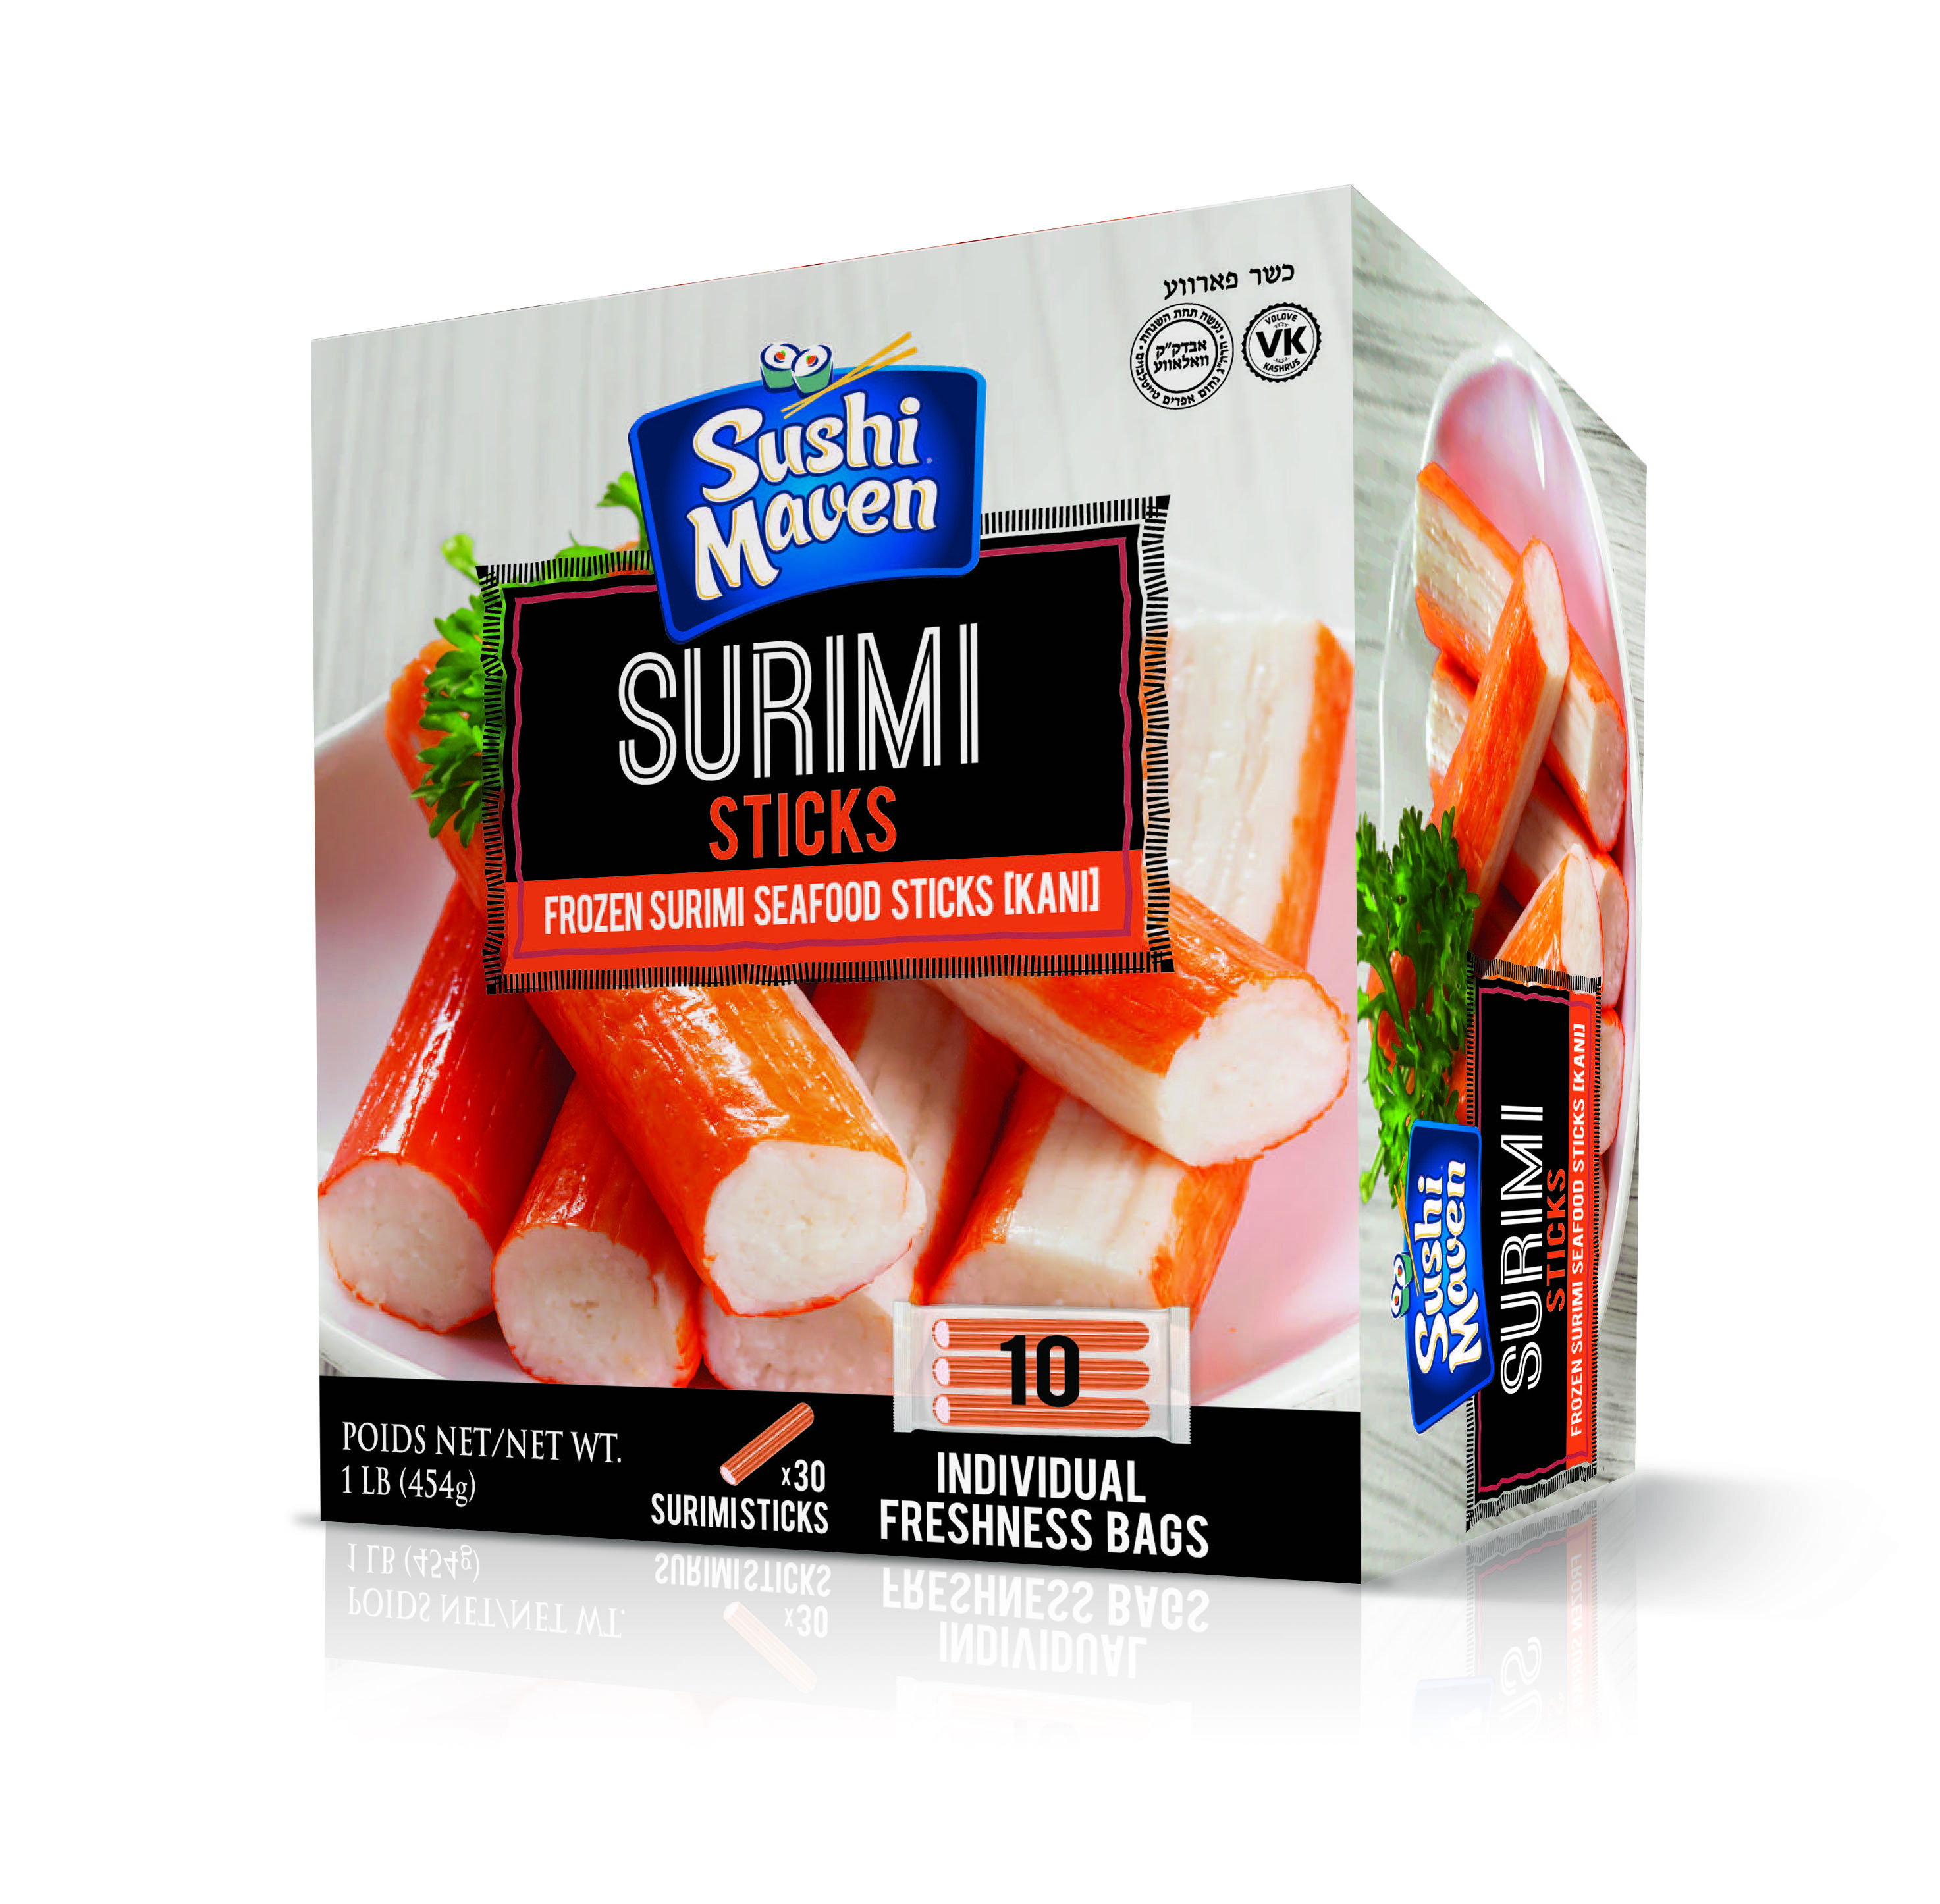 SushiMavencom, Your Source For Everything Sushi!